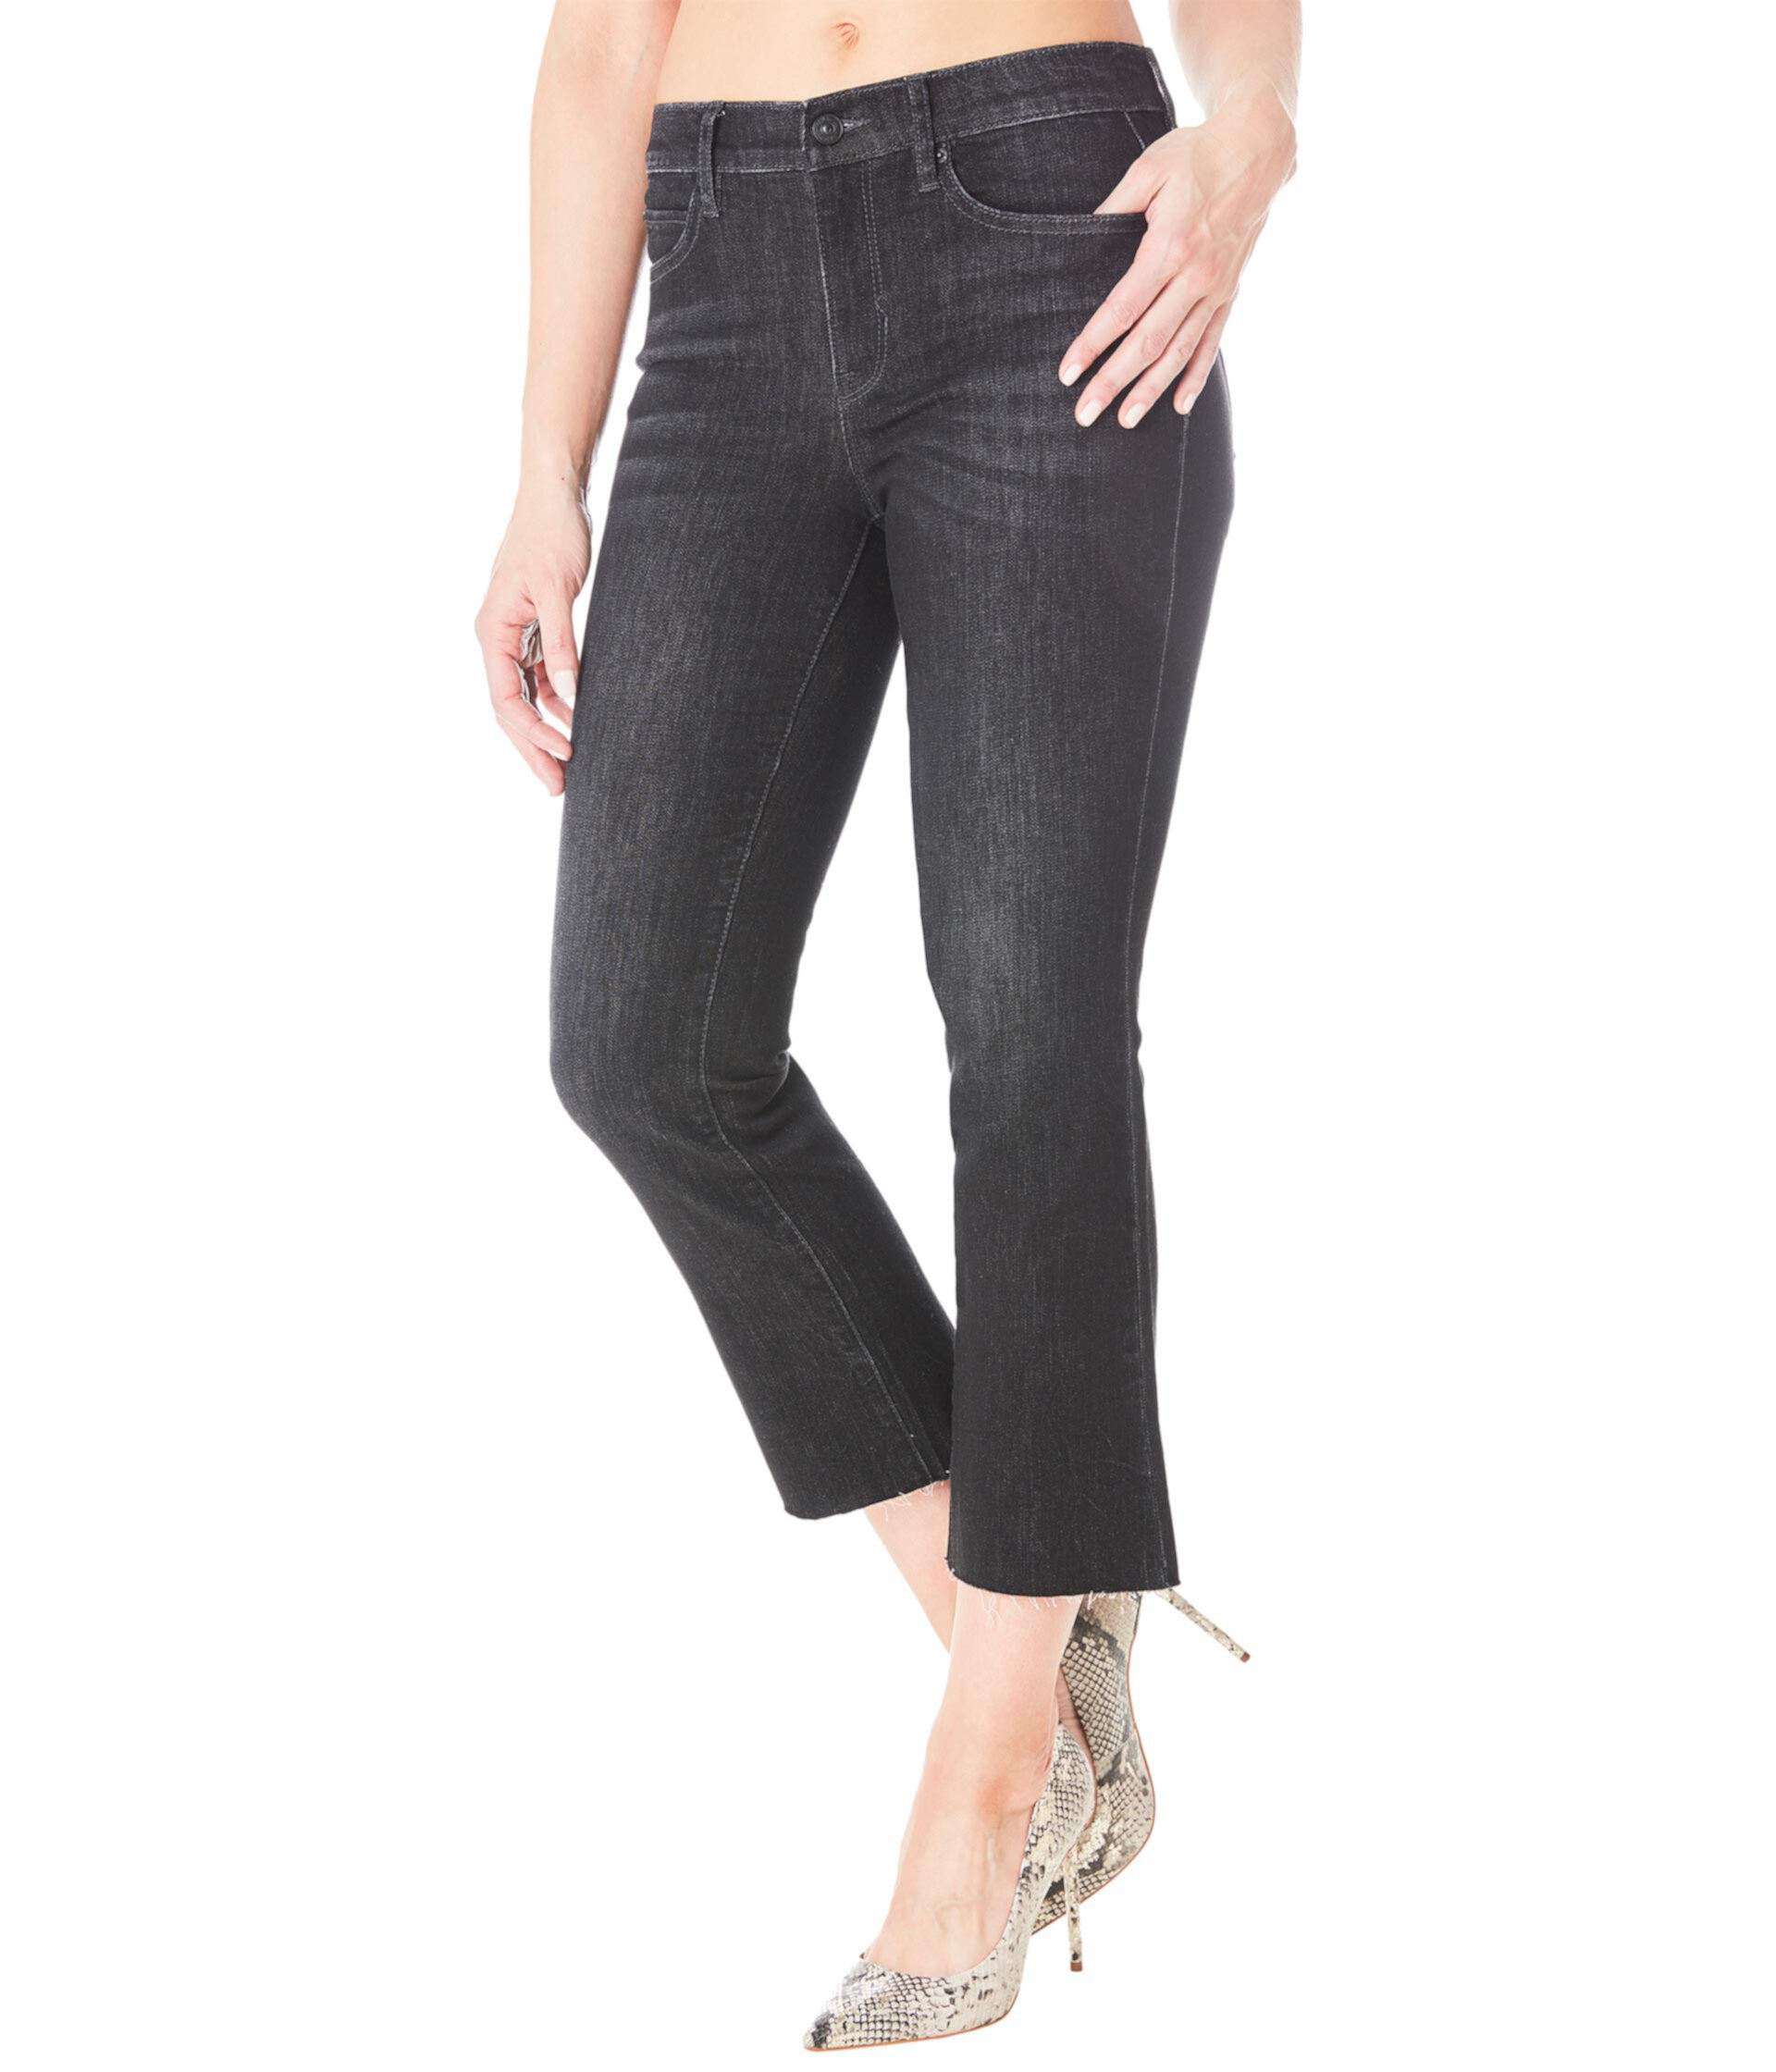 Укороченные джинсовые ботинки Soho с высокой посадкой в цвете Black Nicole Miller New York